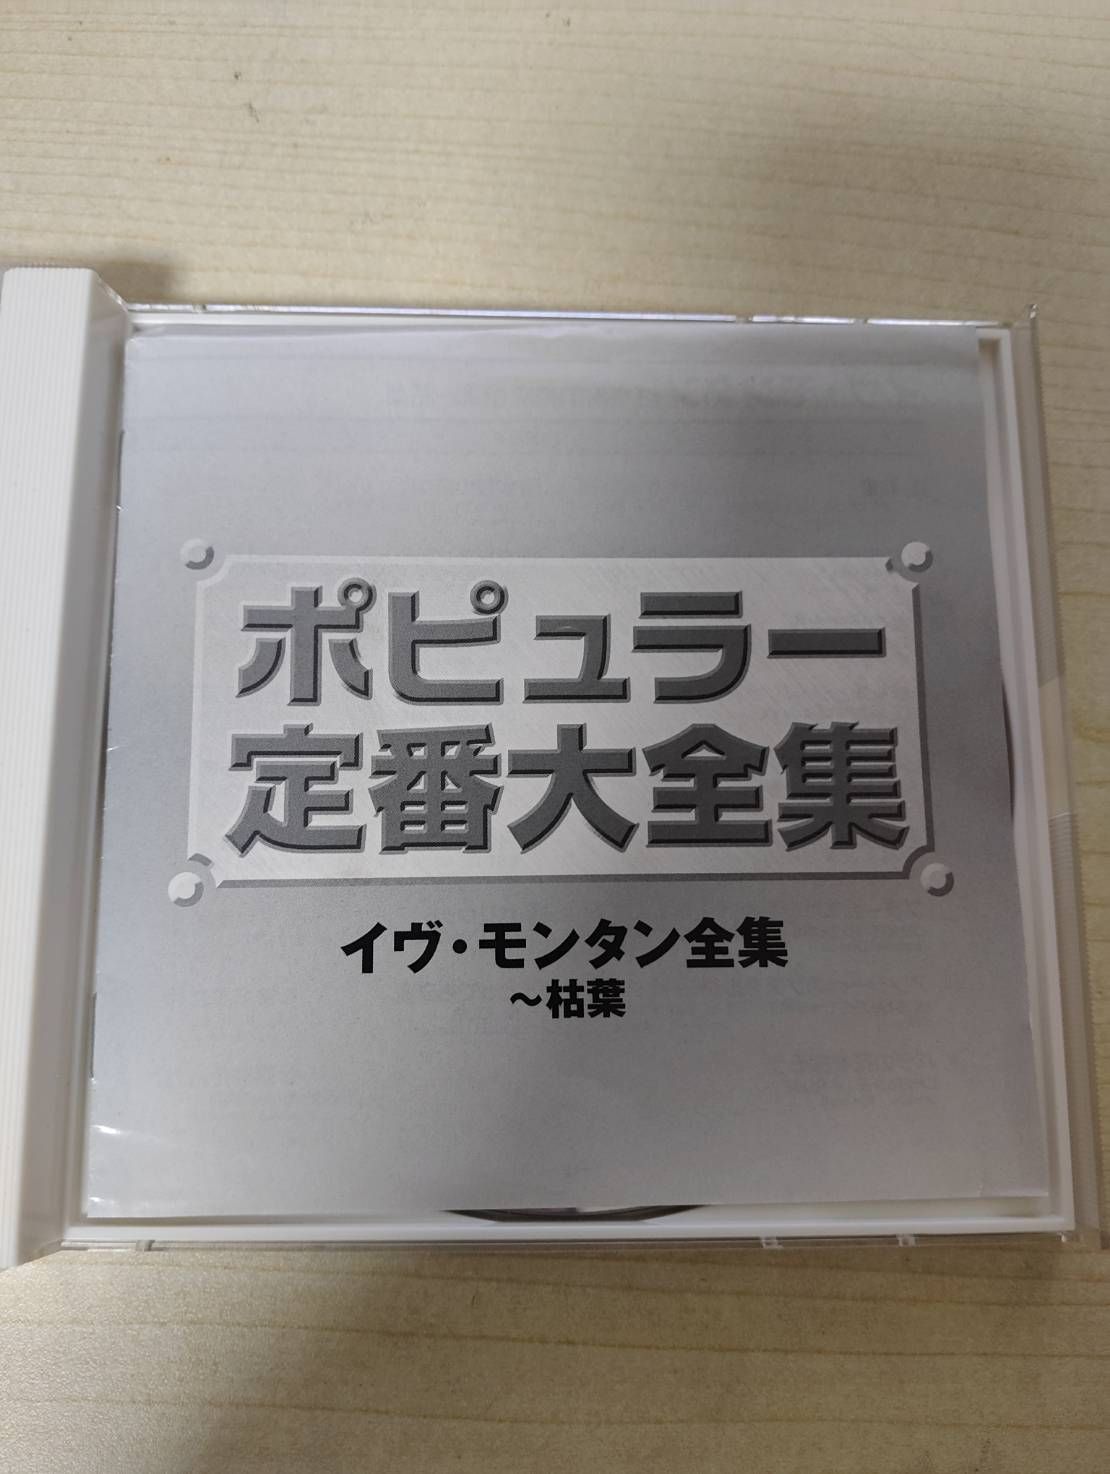 CD 洋楽 イヴ・モンタン全集~枯葉 Z68-76